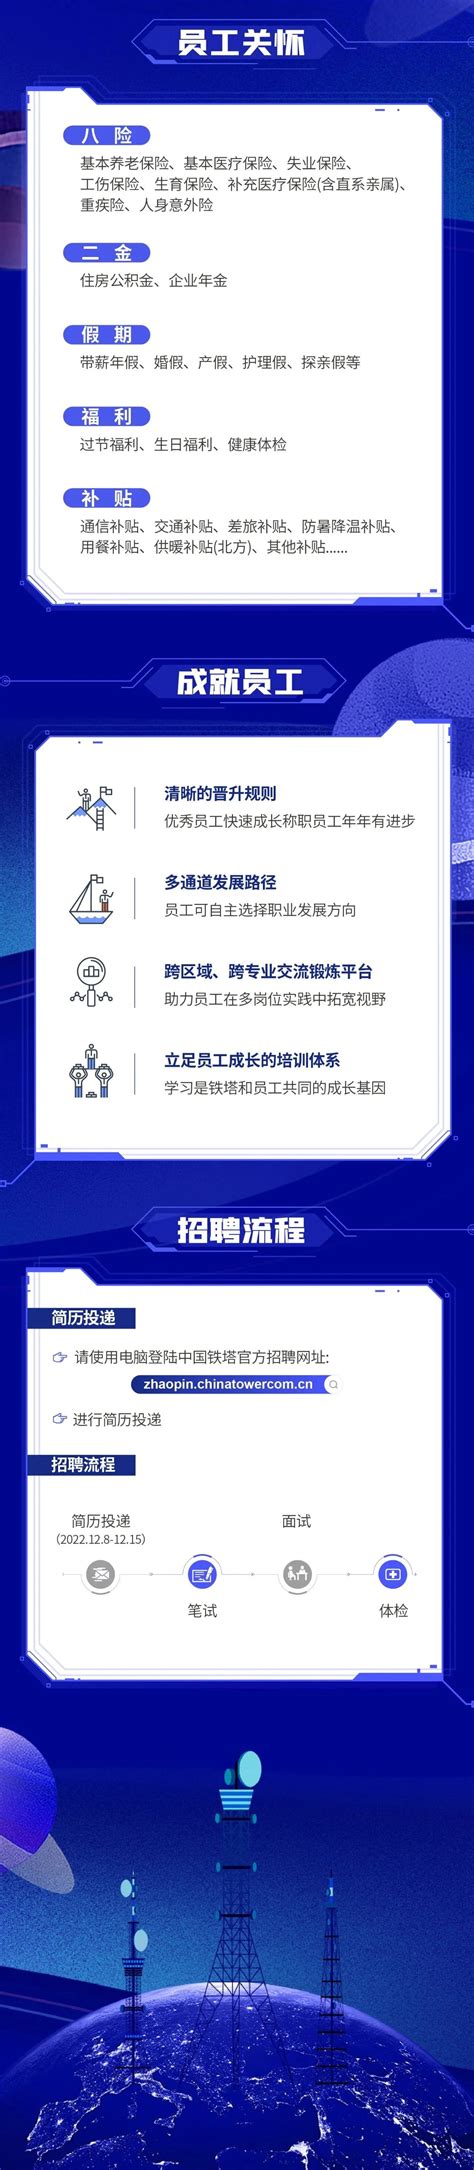 【名企】中国铁塔股份有限公司山西省分公司2022年社会招聘